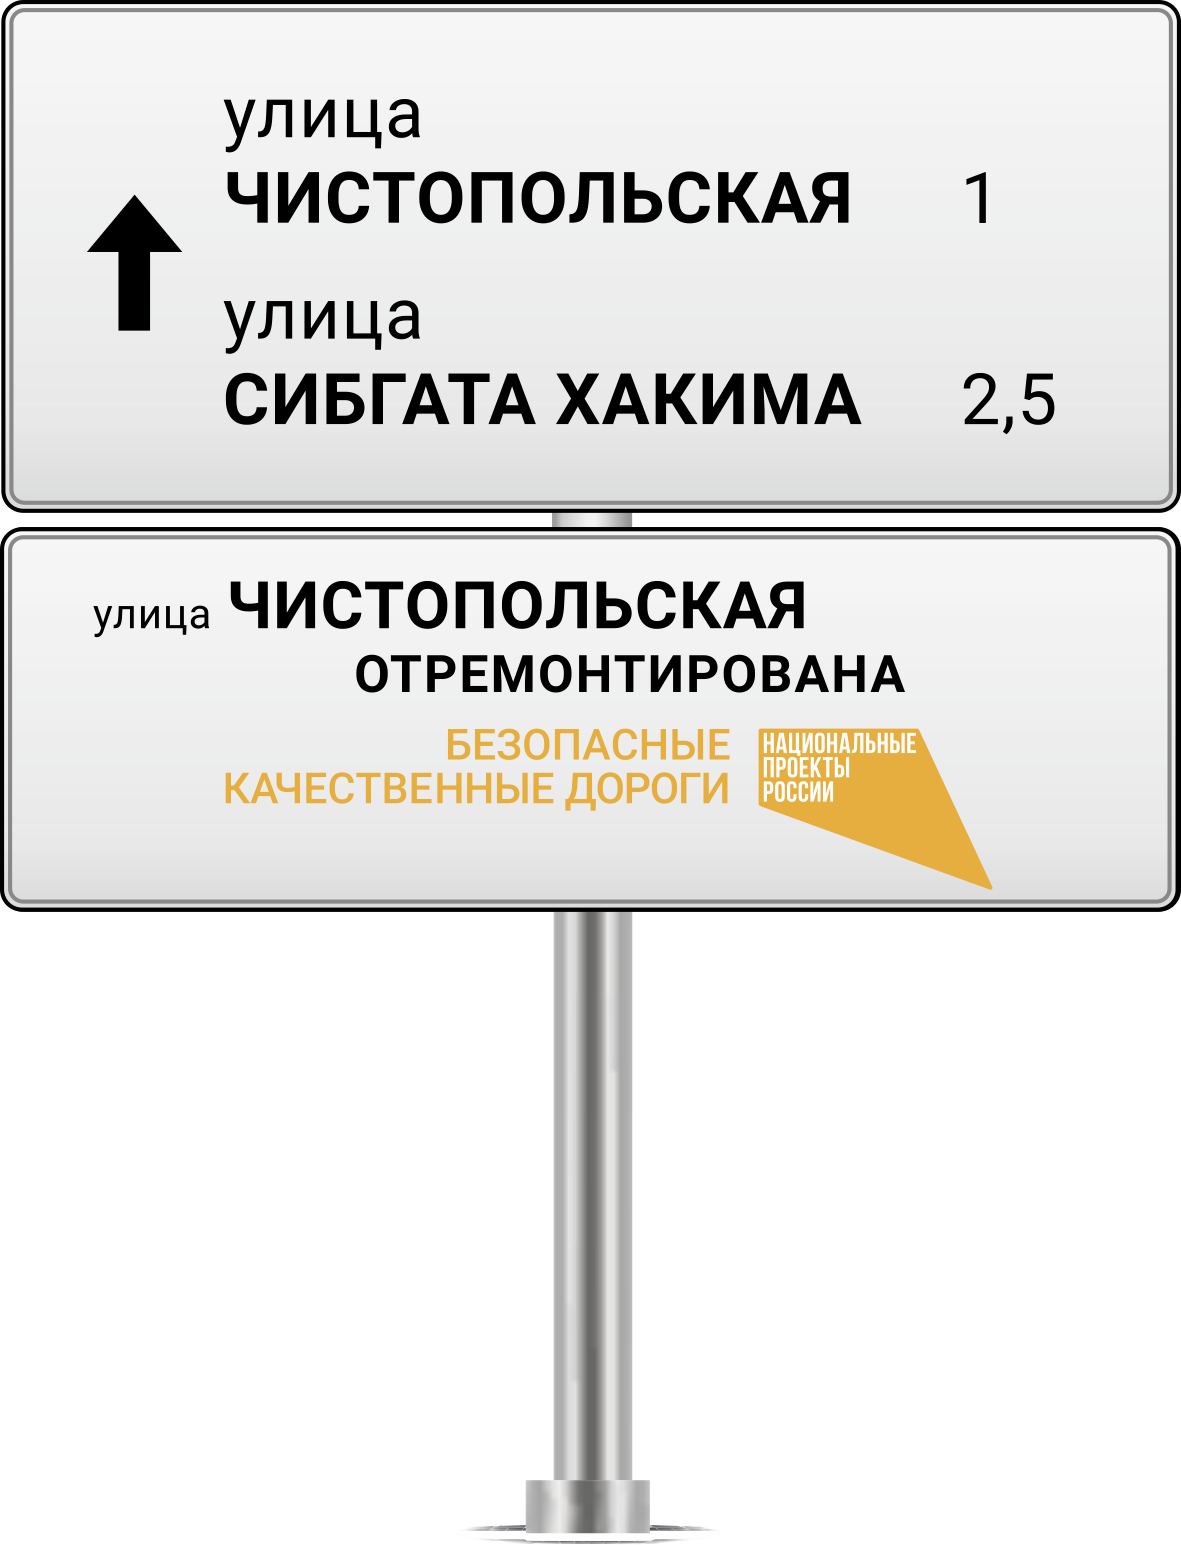 Информационный щит на объектах национального проекта “Безопасные и качественные автомобильные дороги”. Уличная табличка